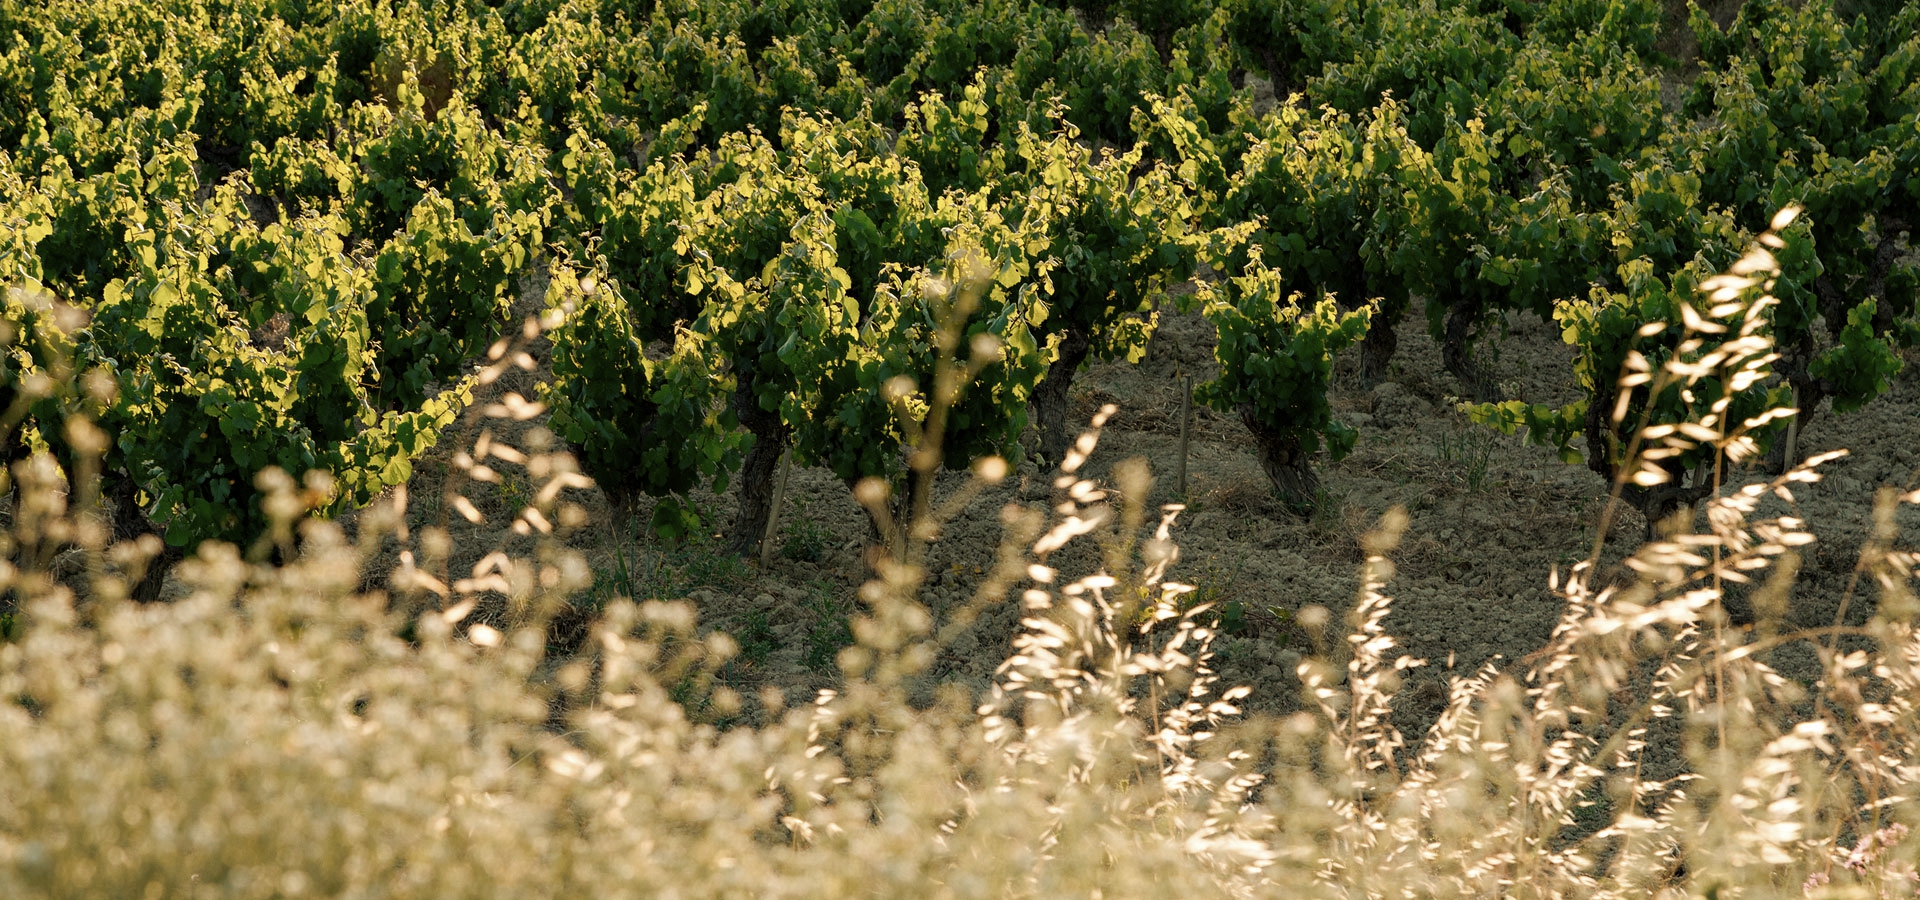 Pioneros en viticultura ecológica y cultivo biodinámico elaborando vinos y cavas catalanes.